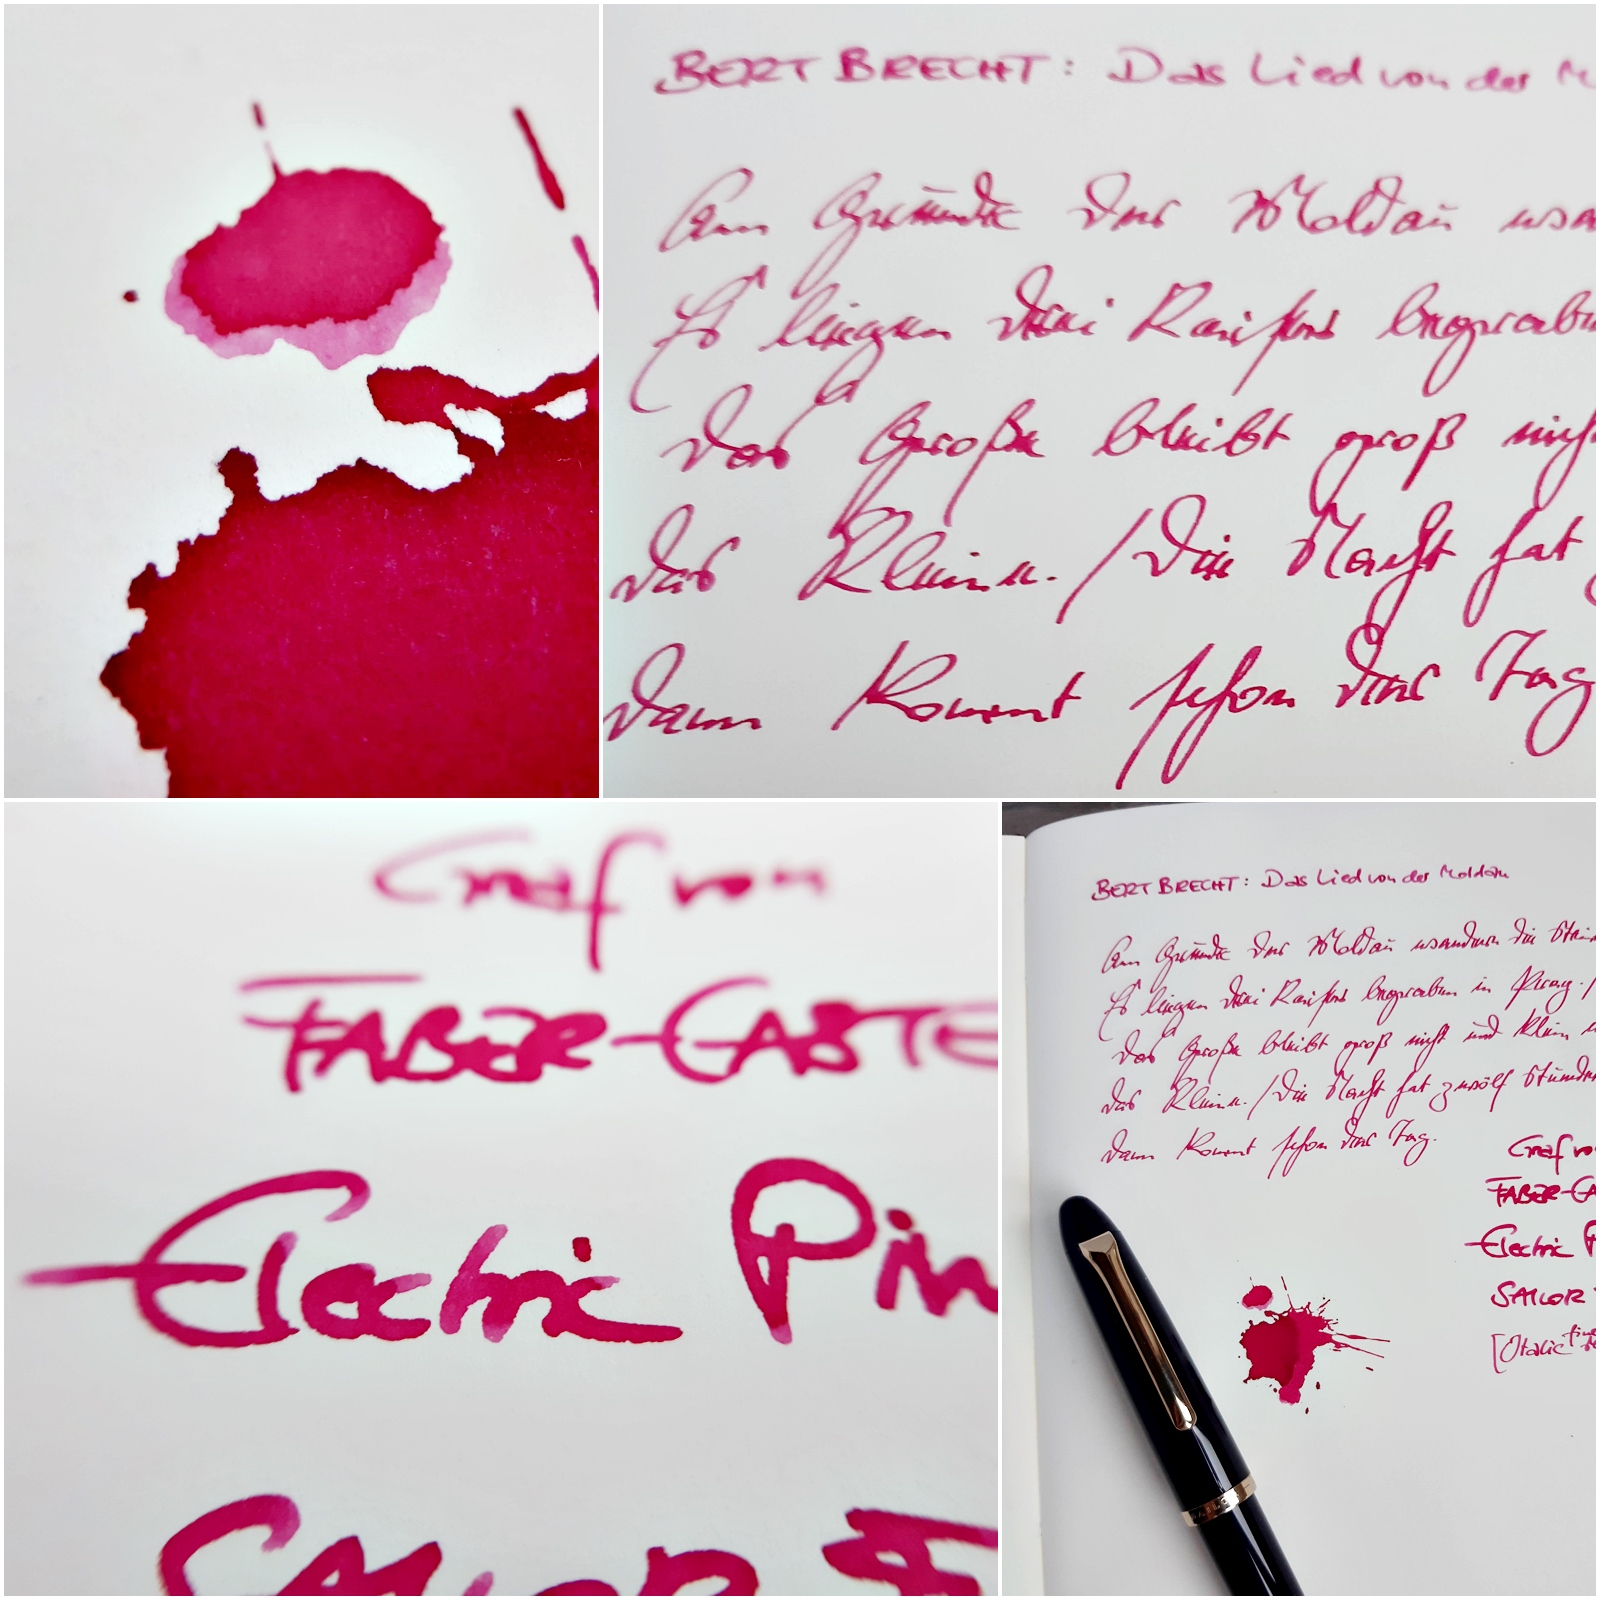 2021 09 24 Graf von Faber-Castell Electric Pink Sailor Fude De Mannen Italic Fude PX.jpg